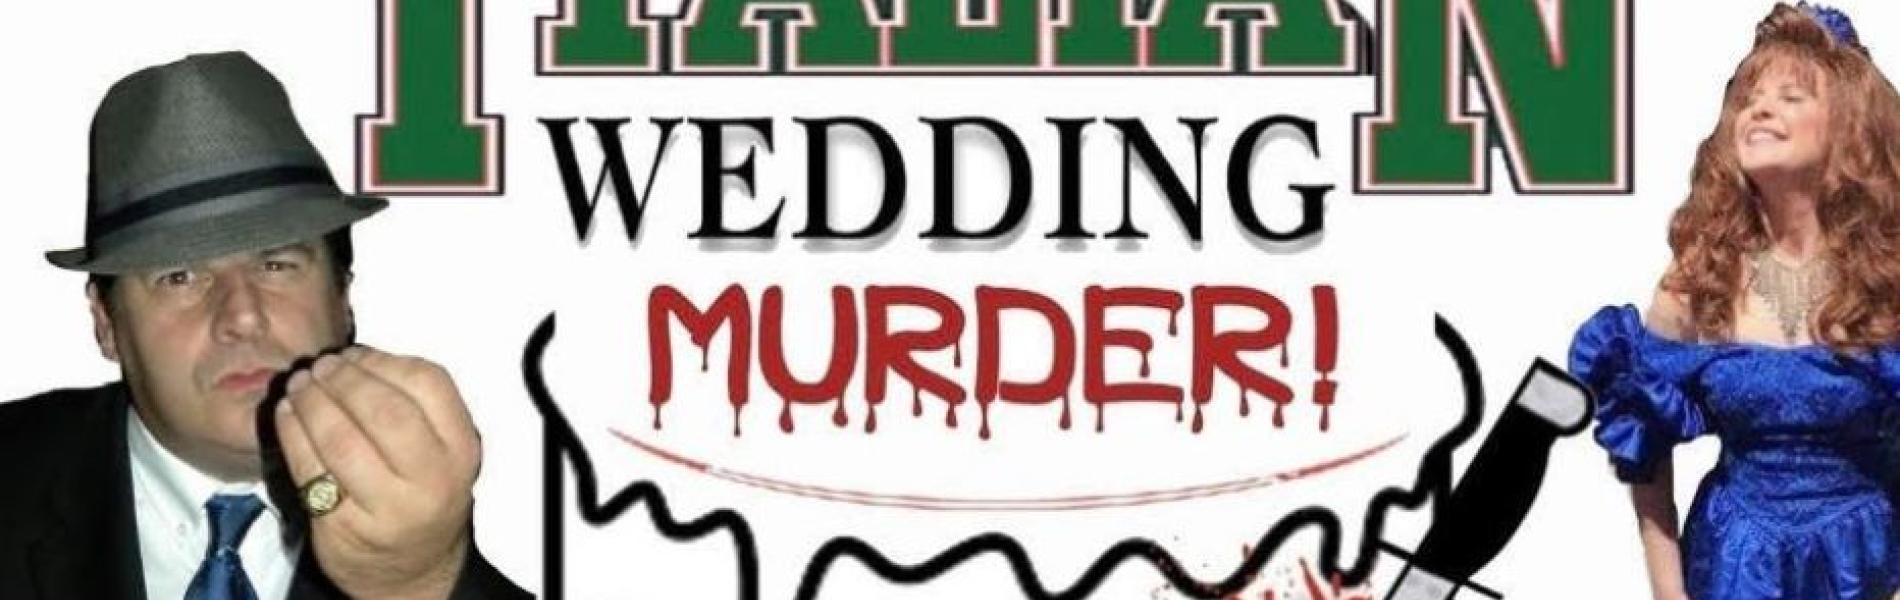 flyer for big fat italian wedding murder show